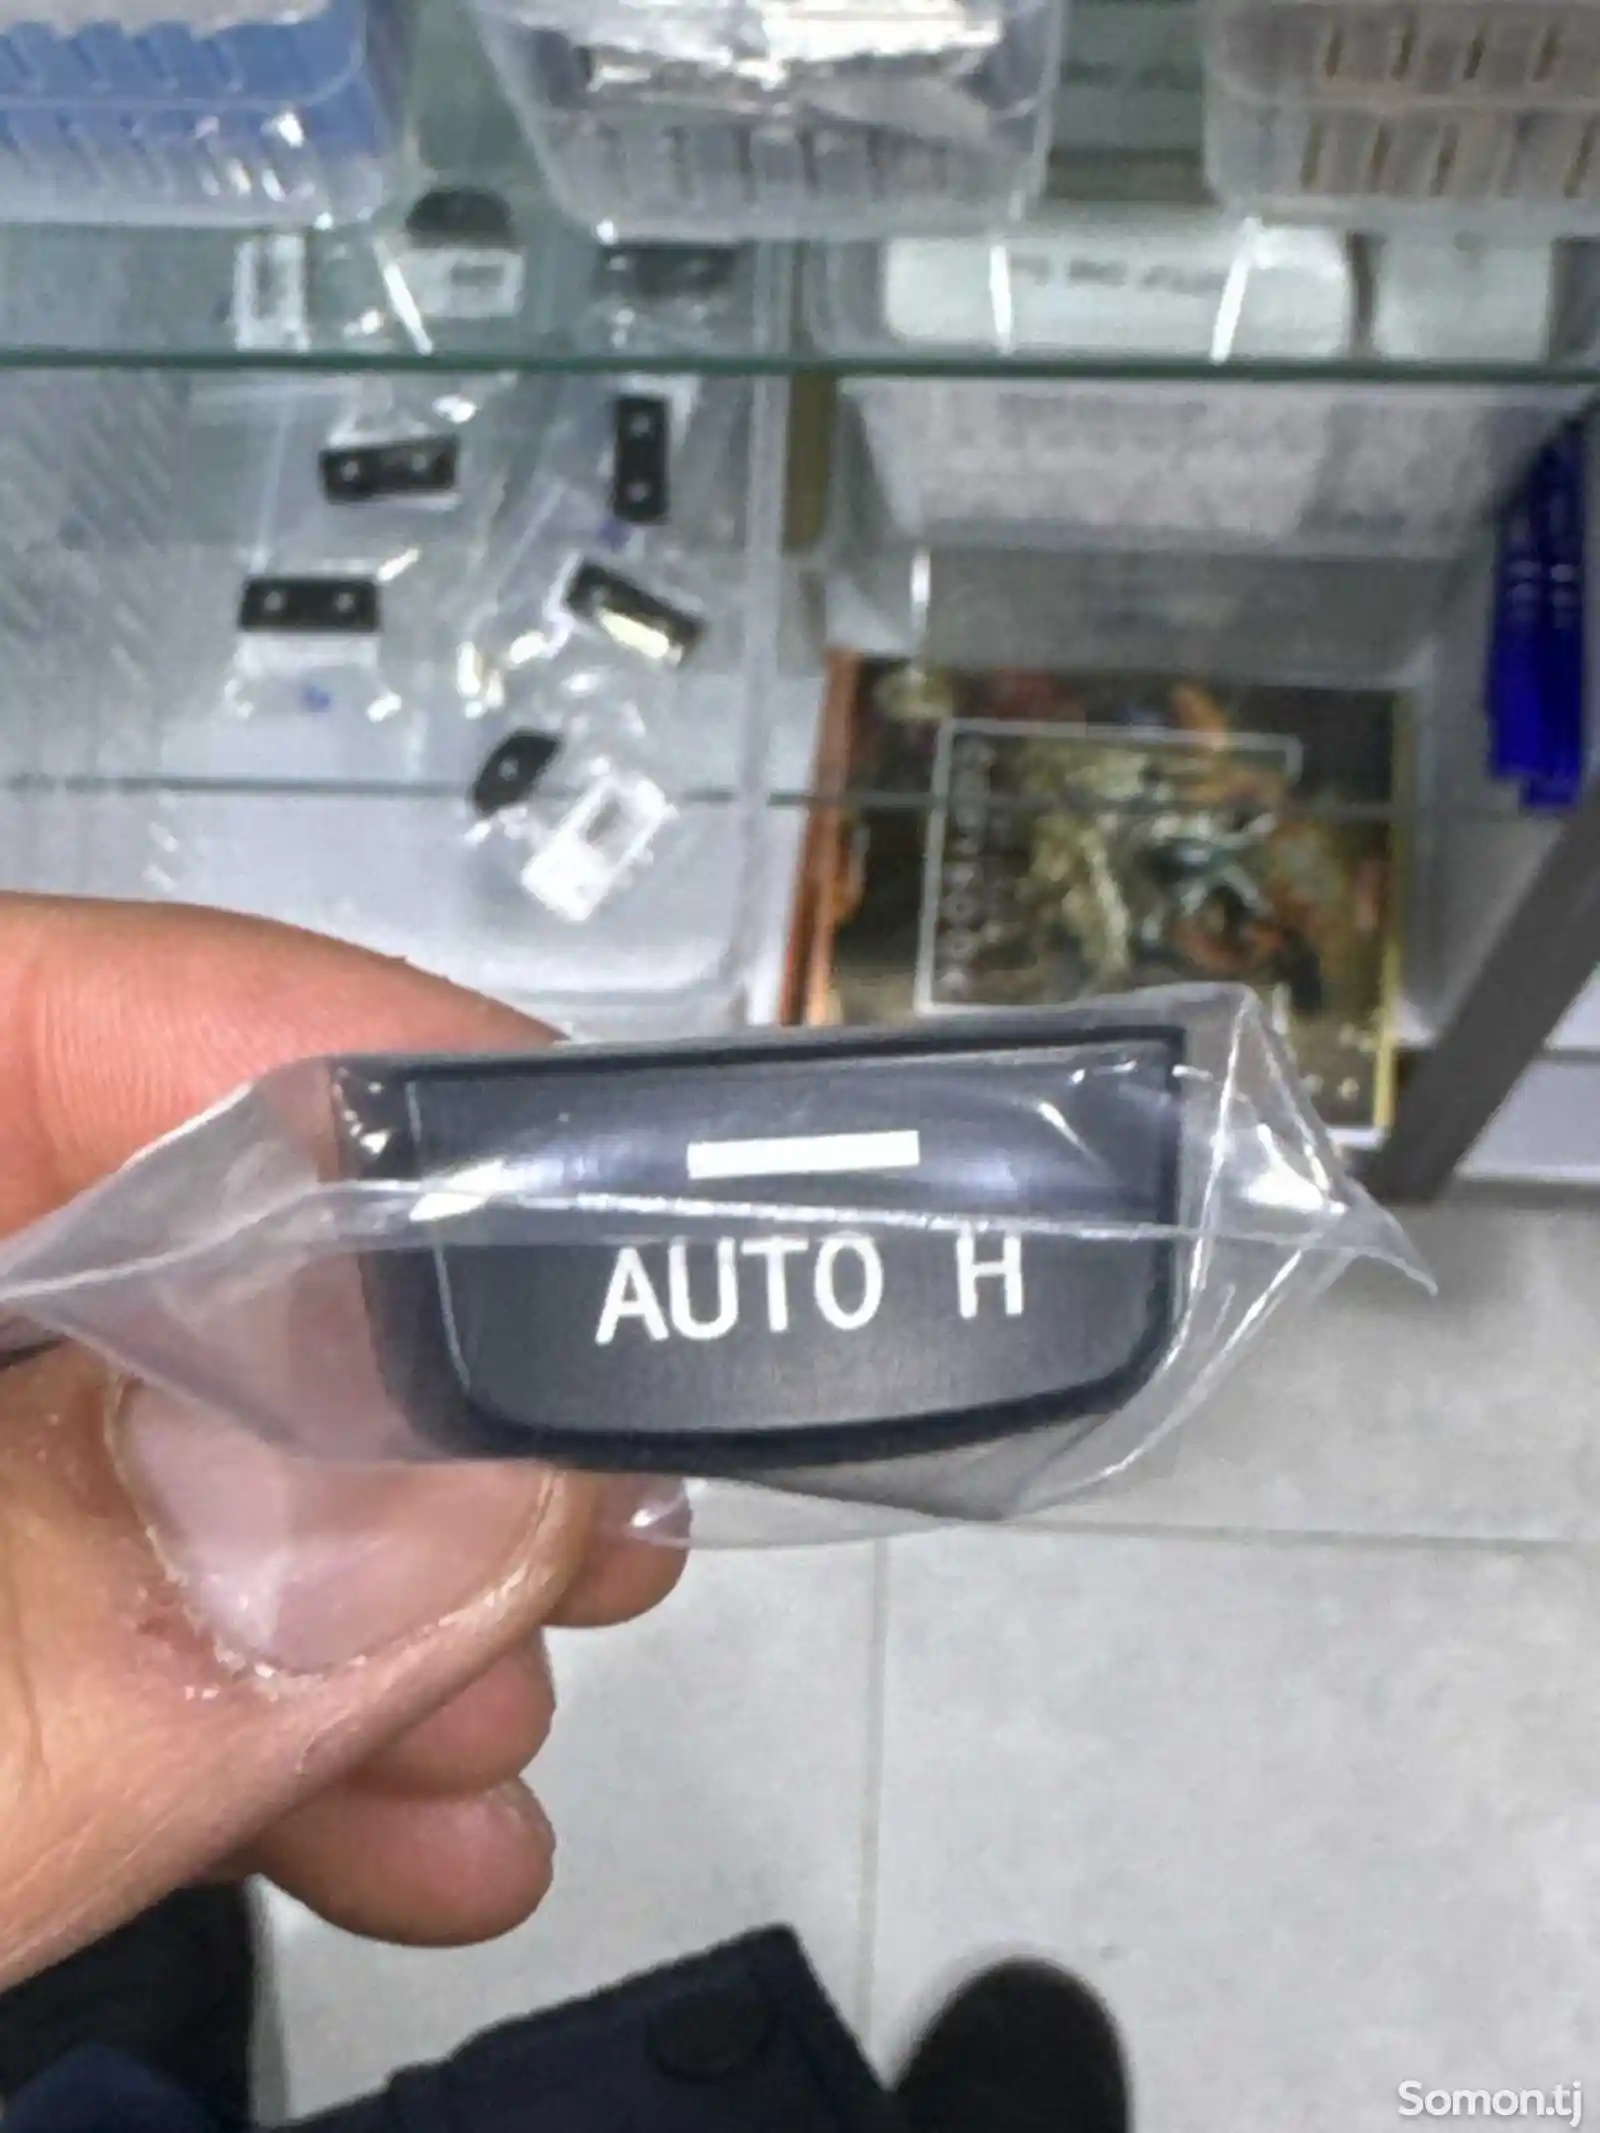 Кнопка Auto H